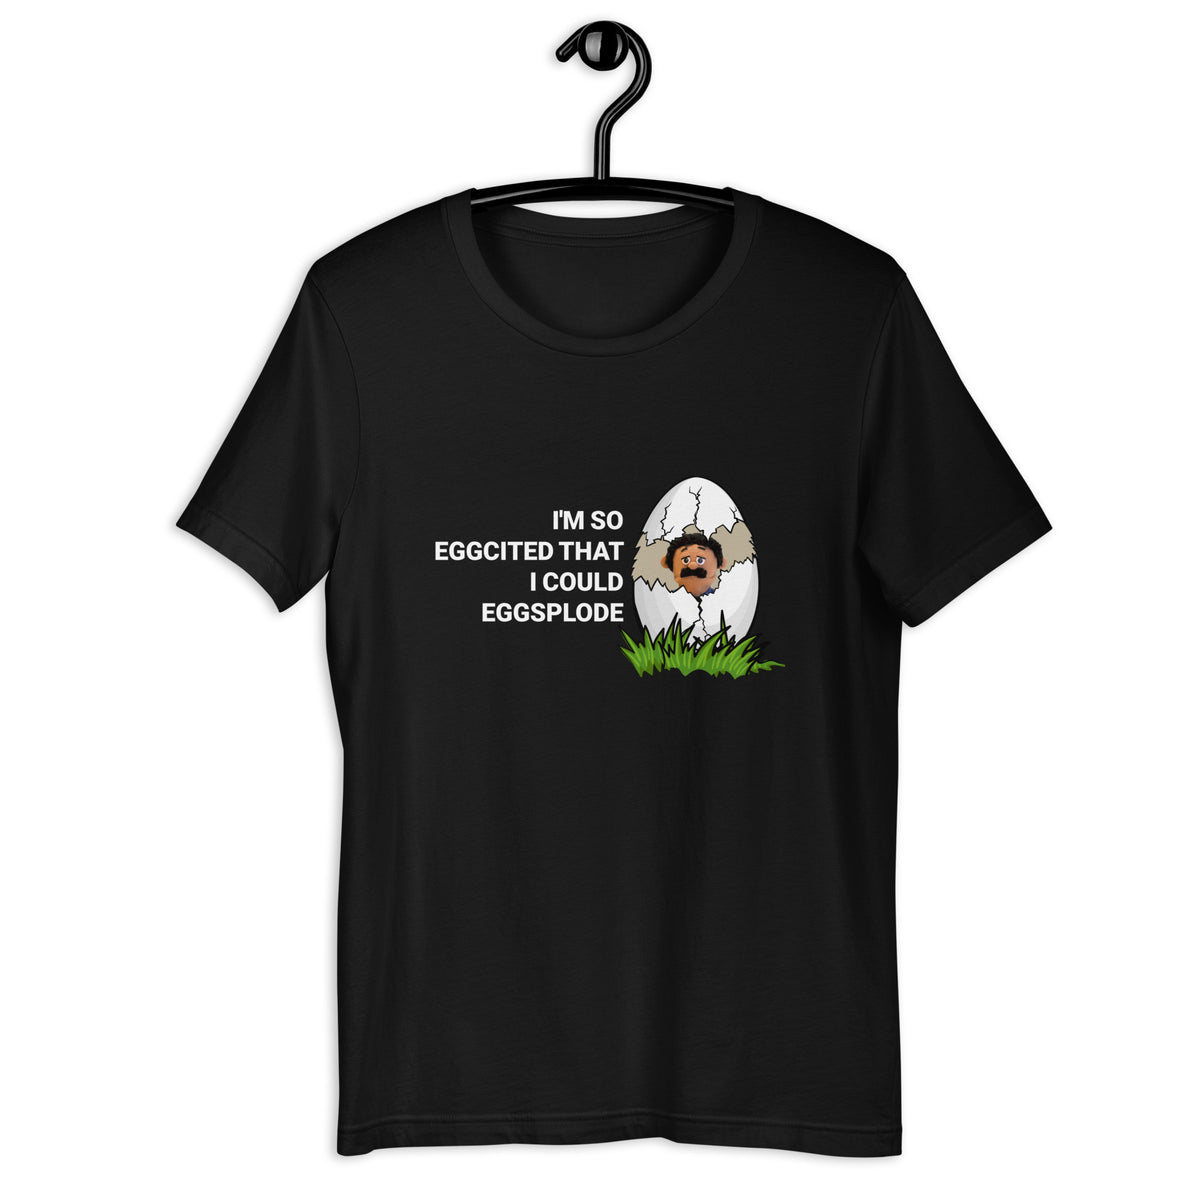 I'm so eggcited I could eggsplode t-shirt - SHOPNOO